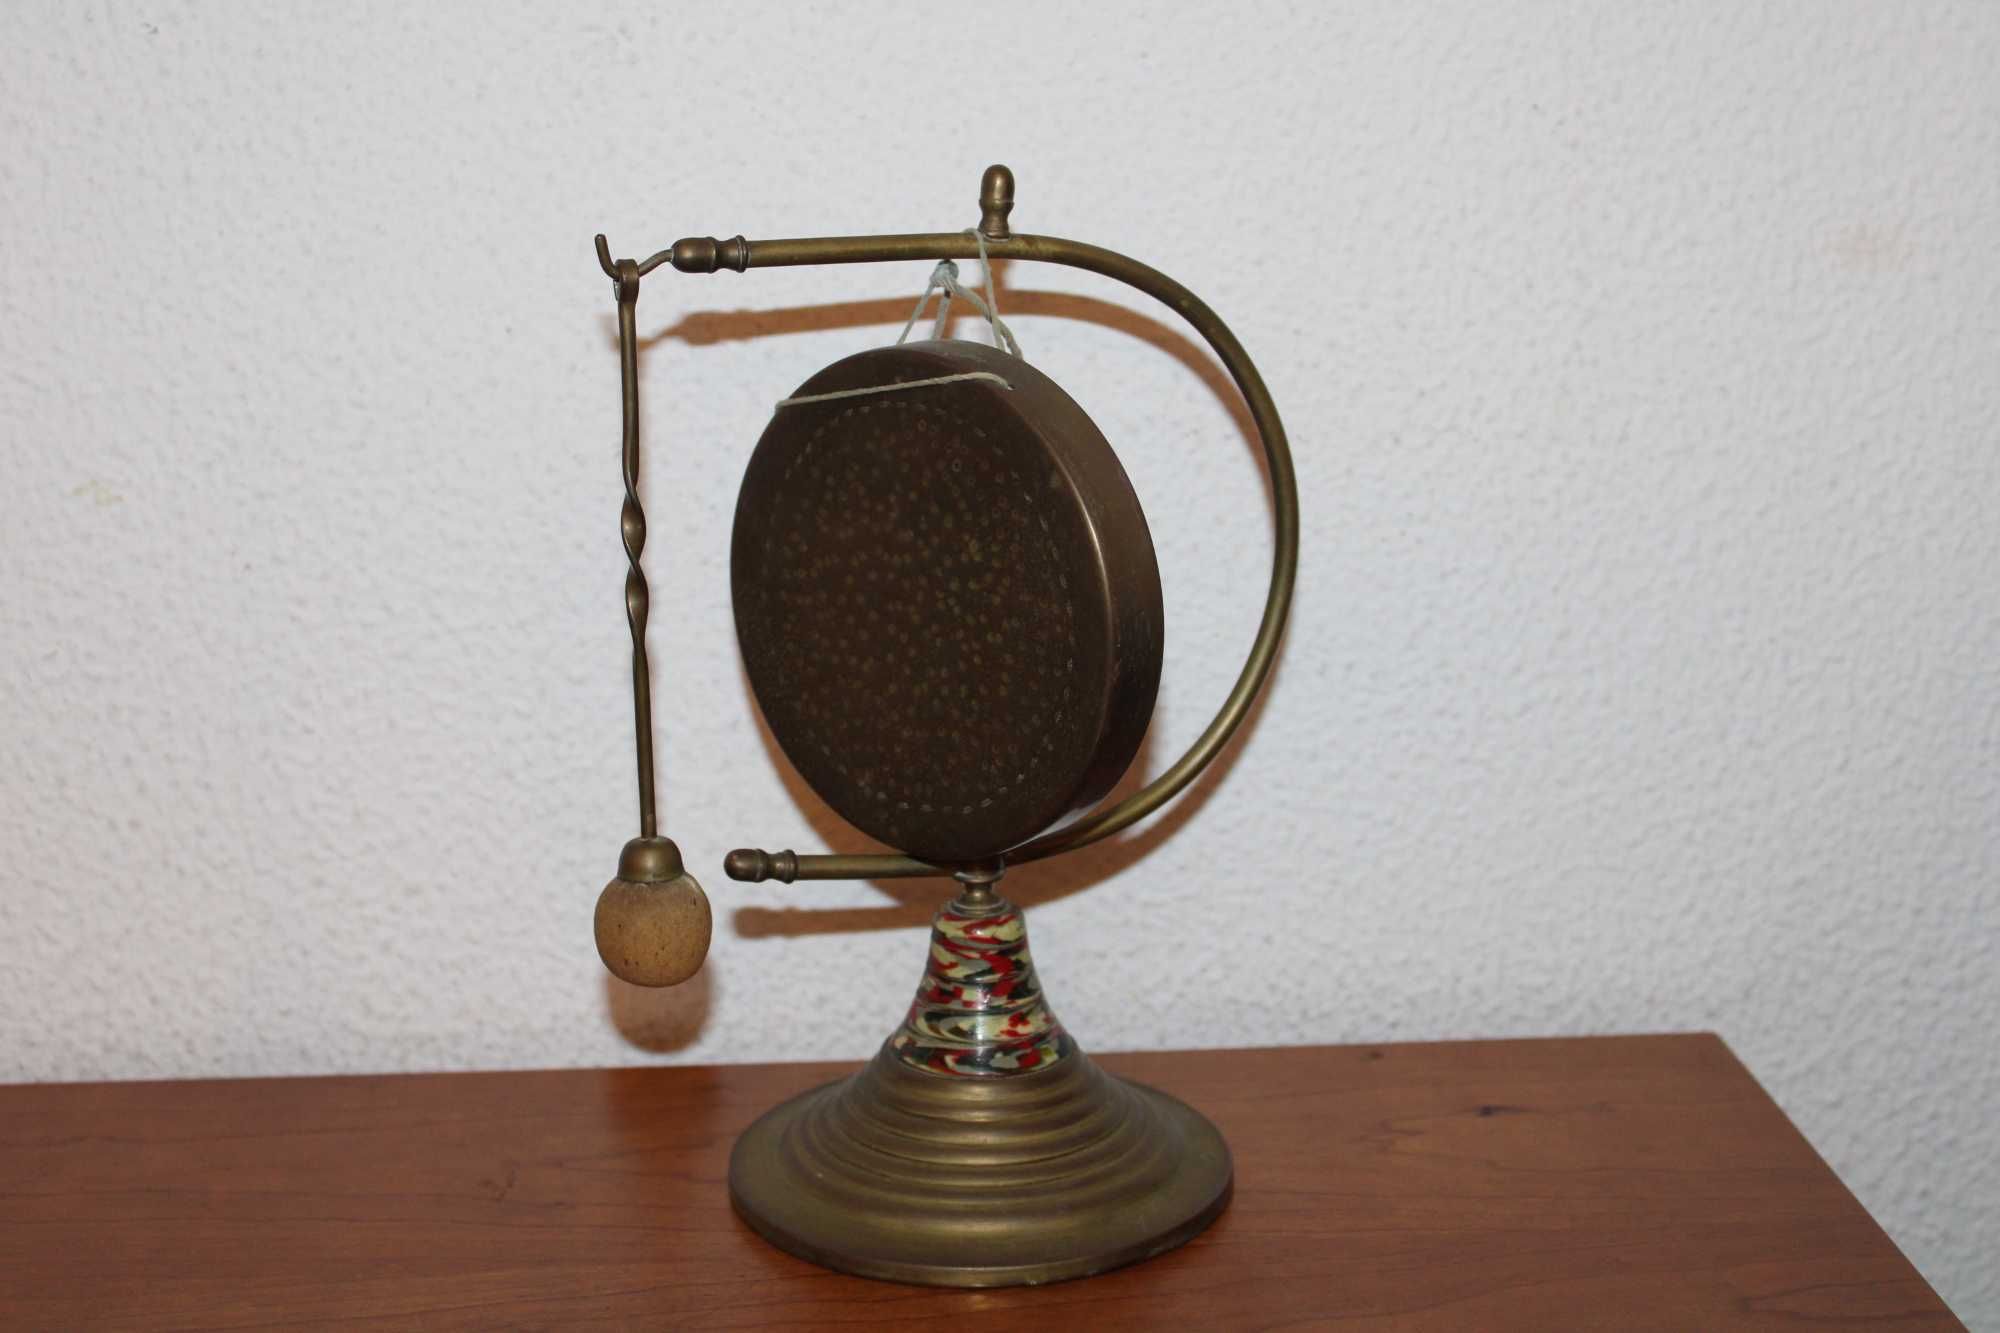 Instrumento Musical GONG, em bronze, com 21 cm, antigo